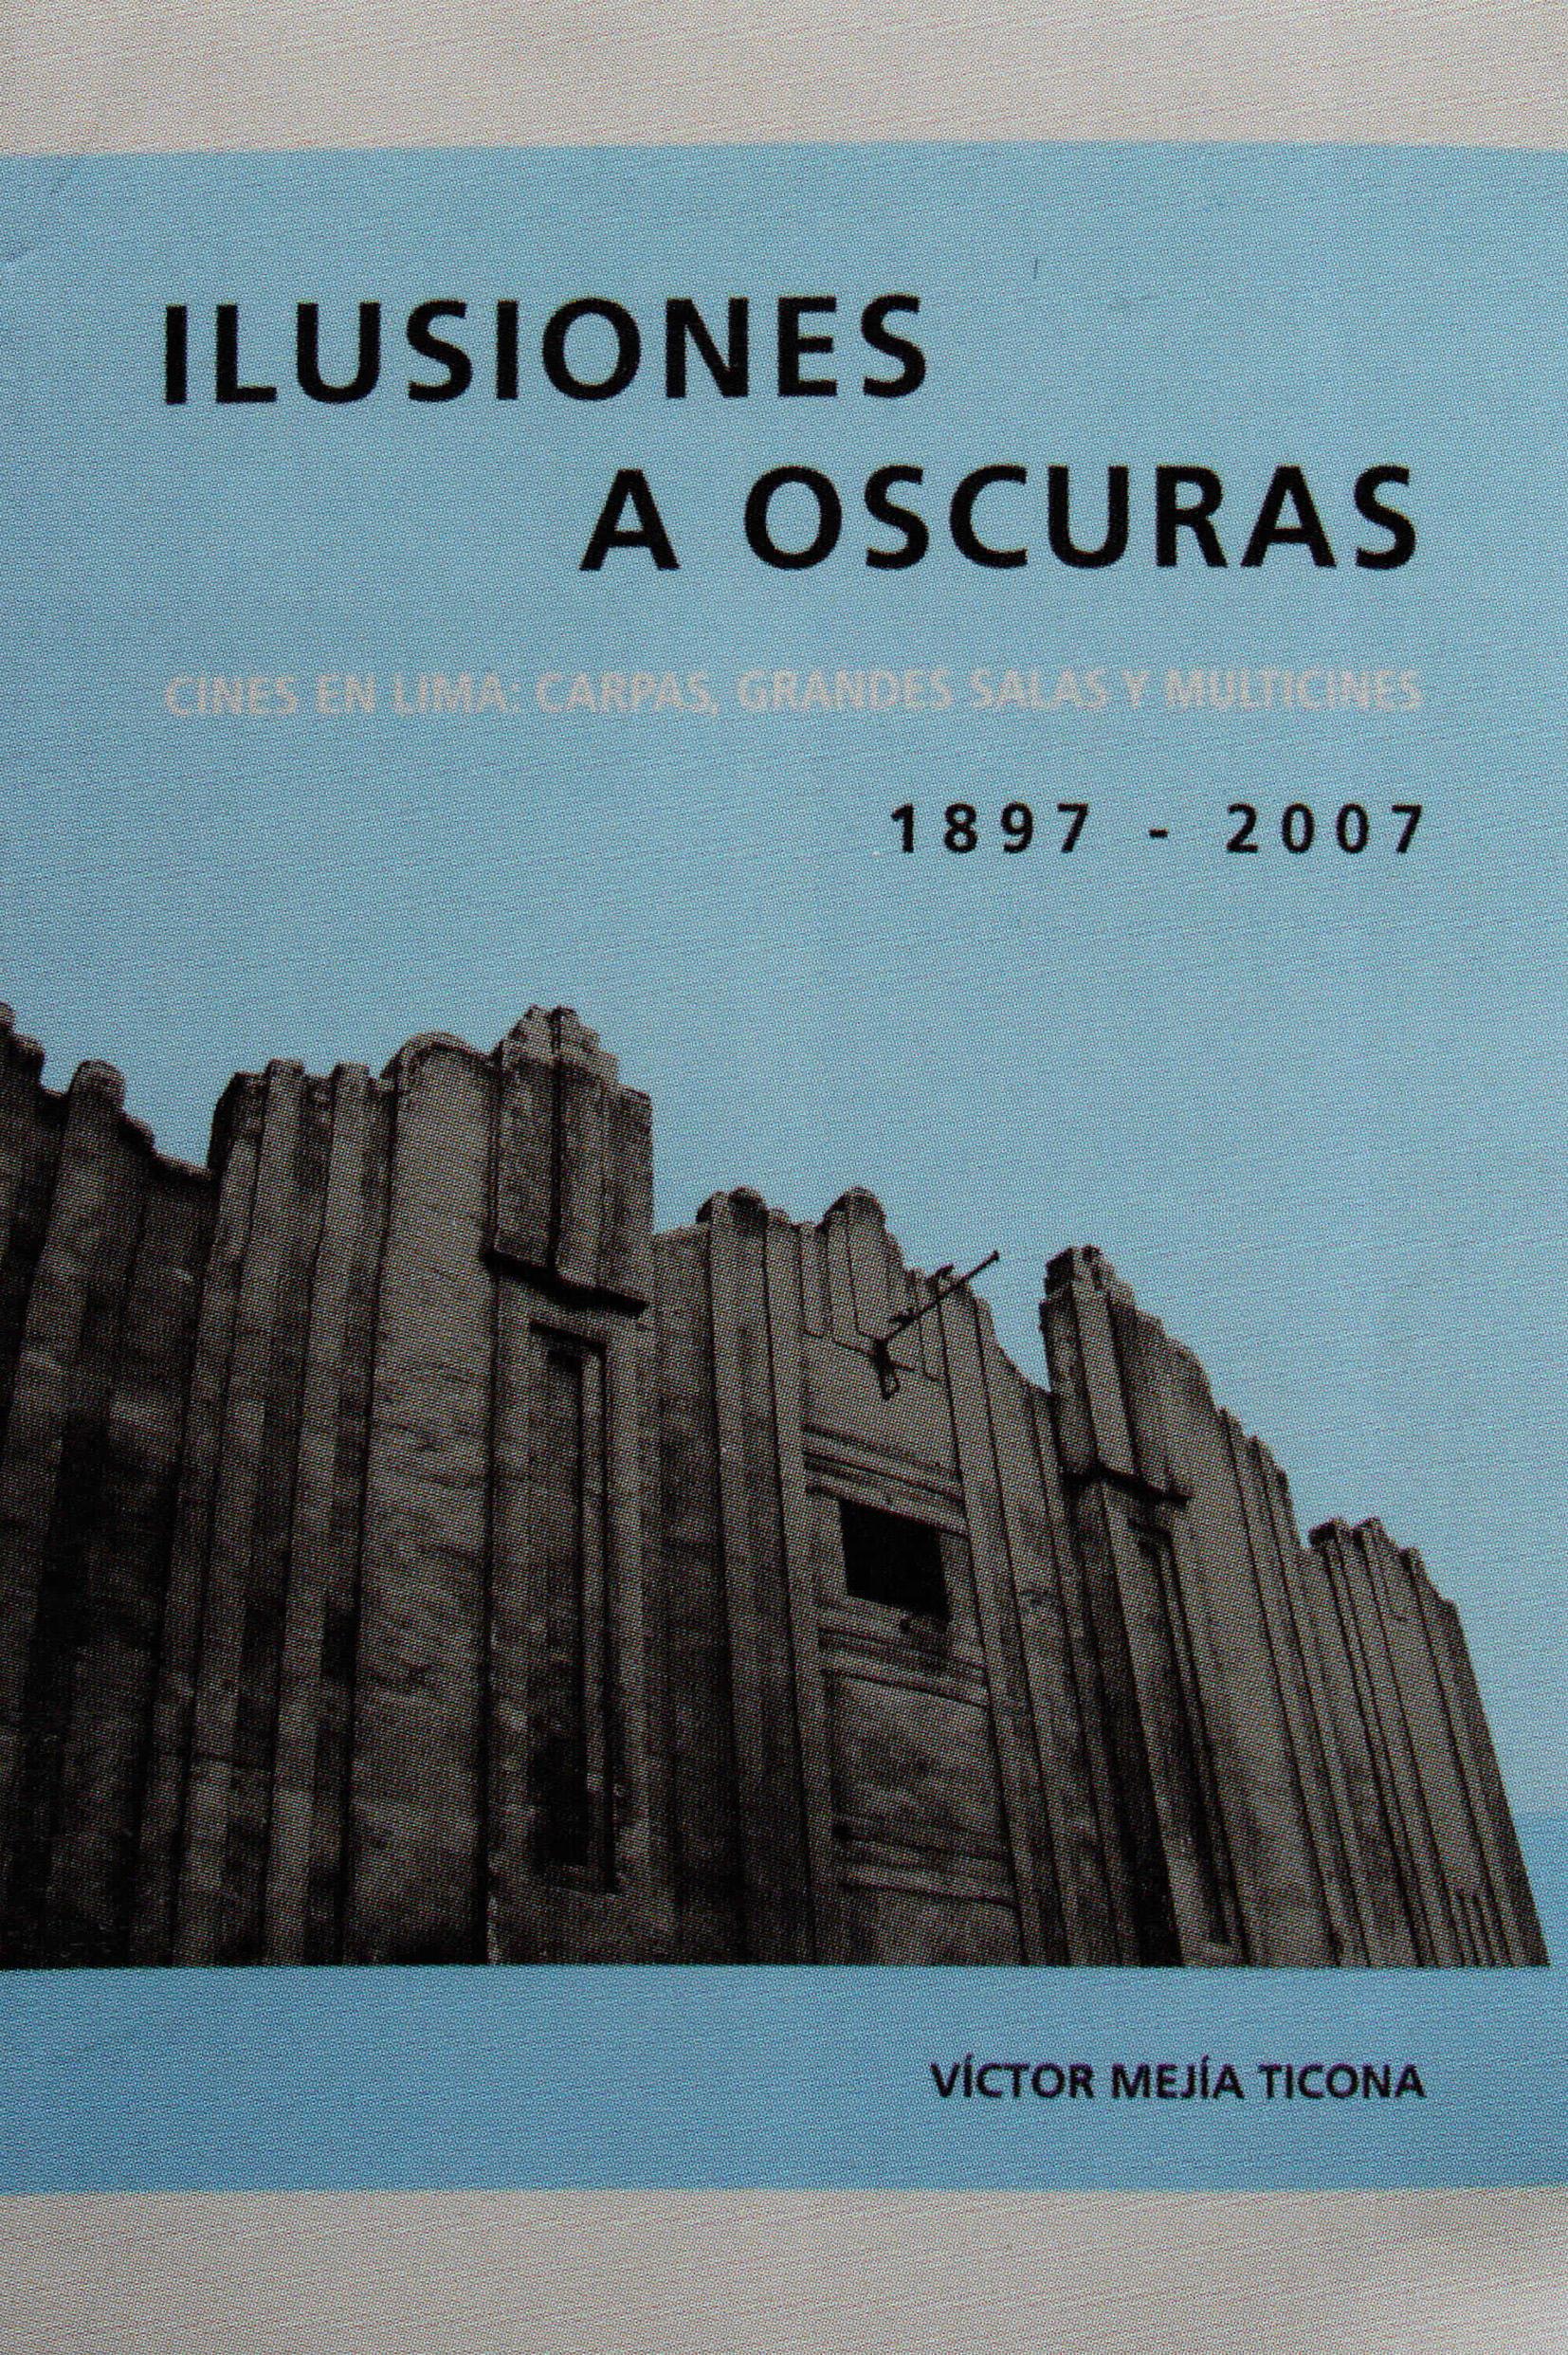 ILUSIONES A OSCURAS CINES EN LIMA : CARPAS , GRANDES SALAS Y MULTICINES